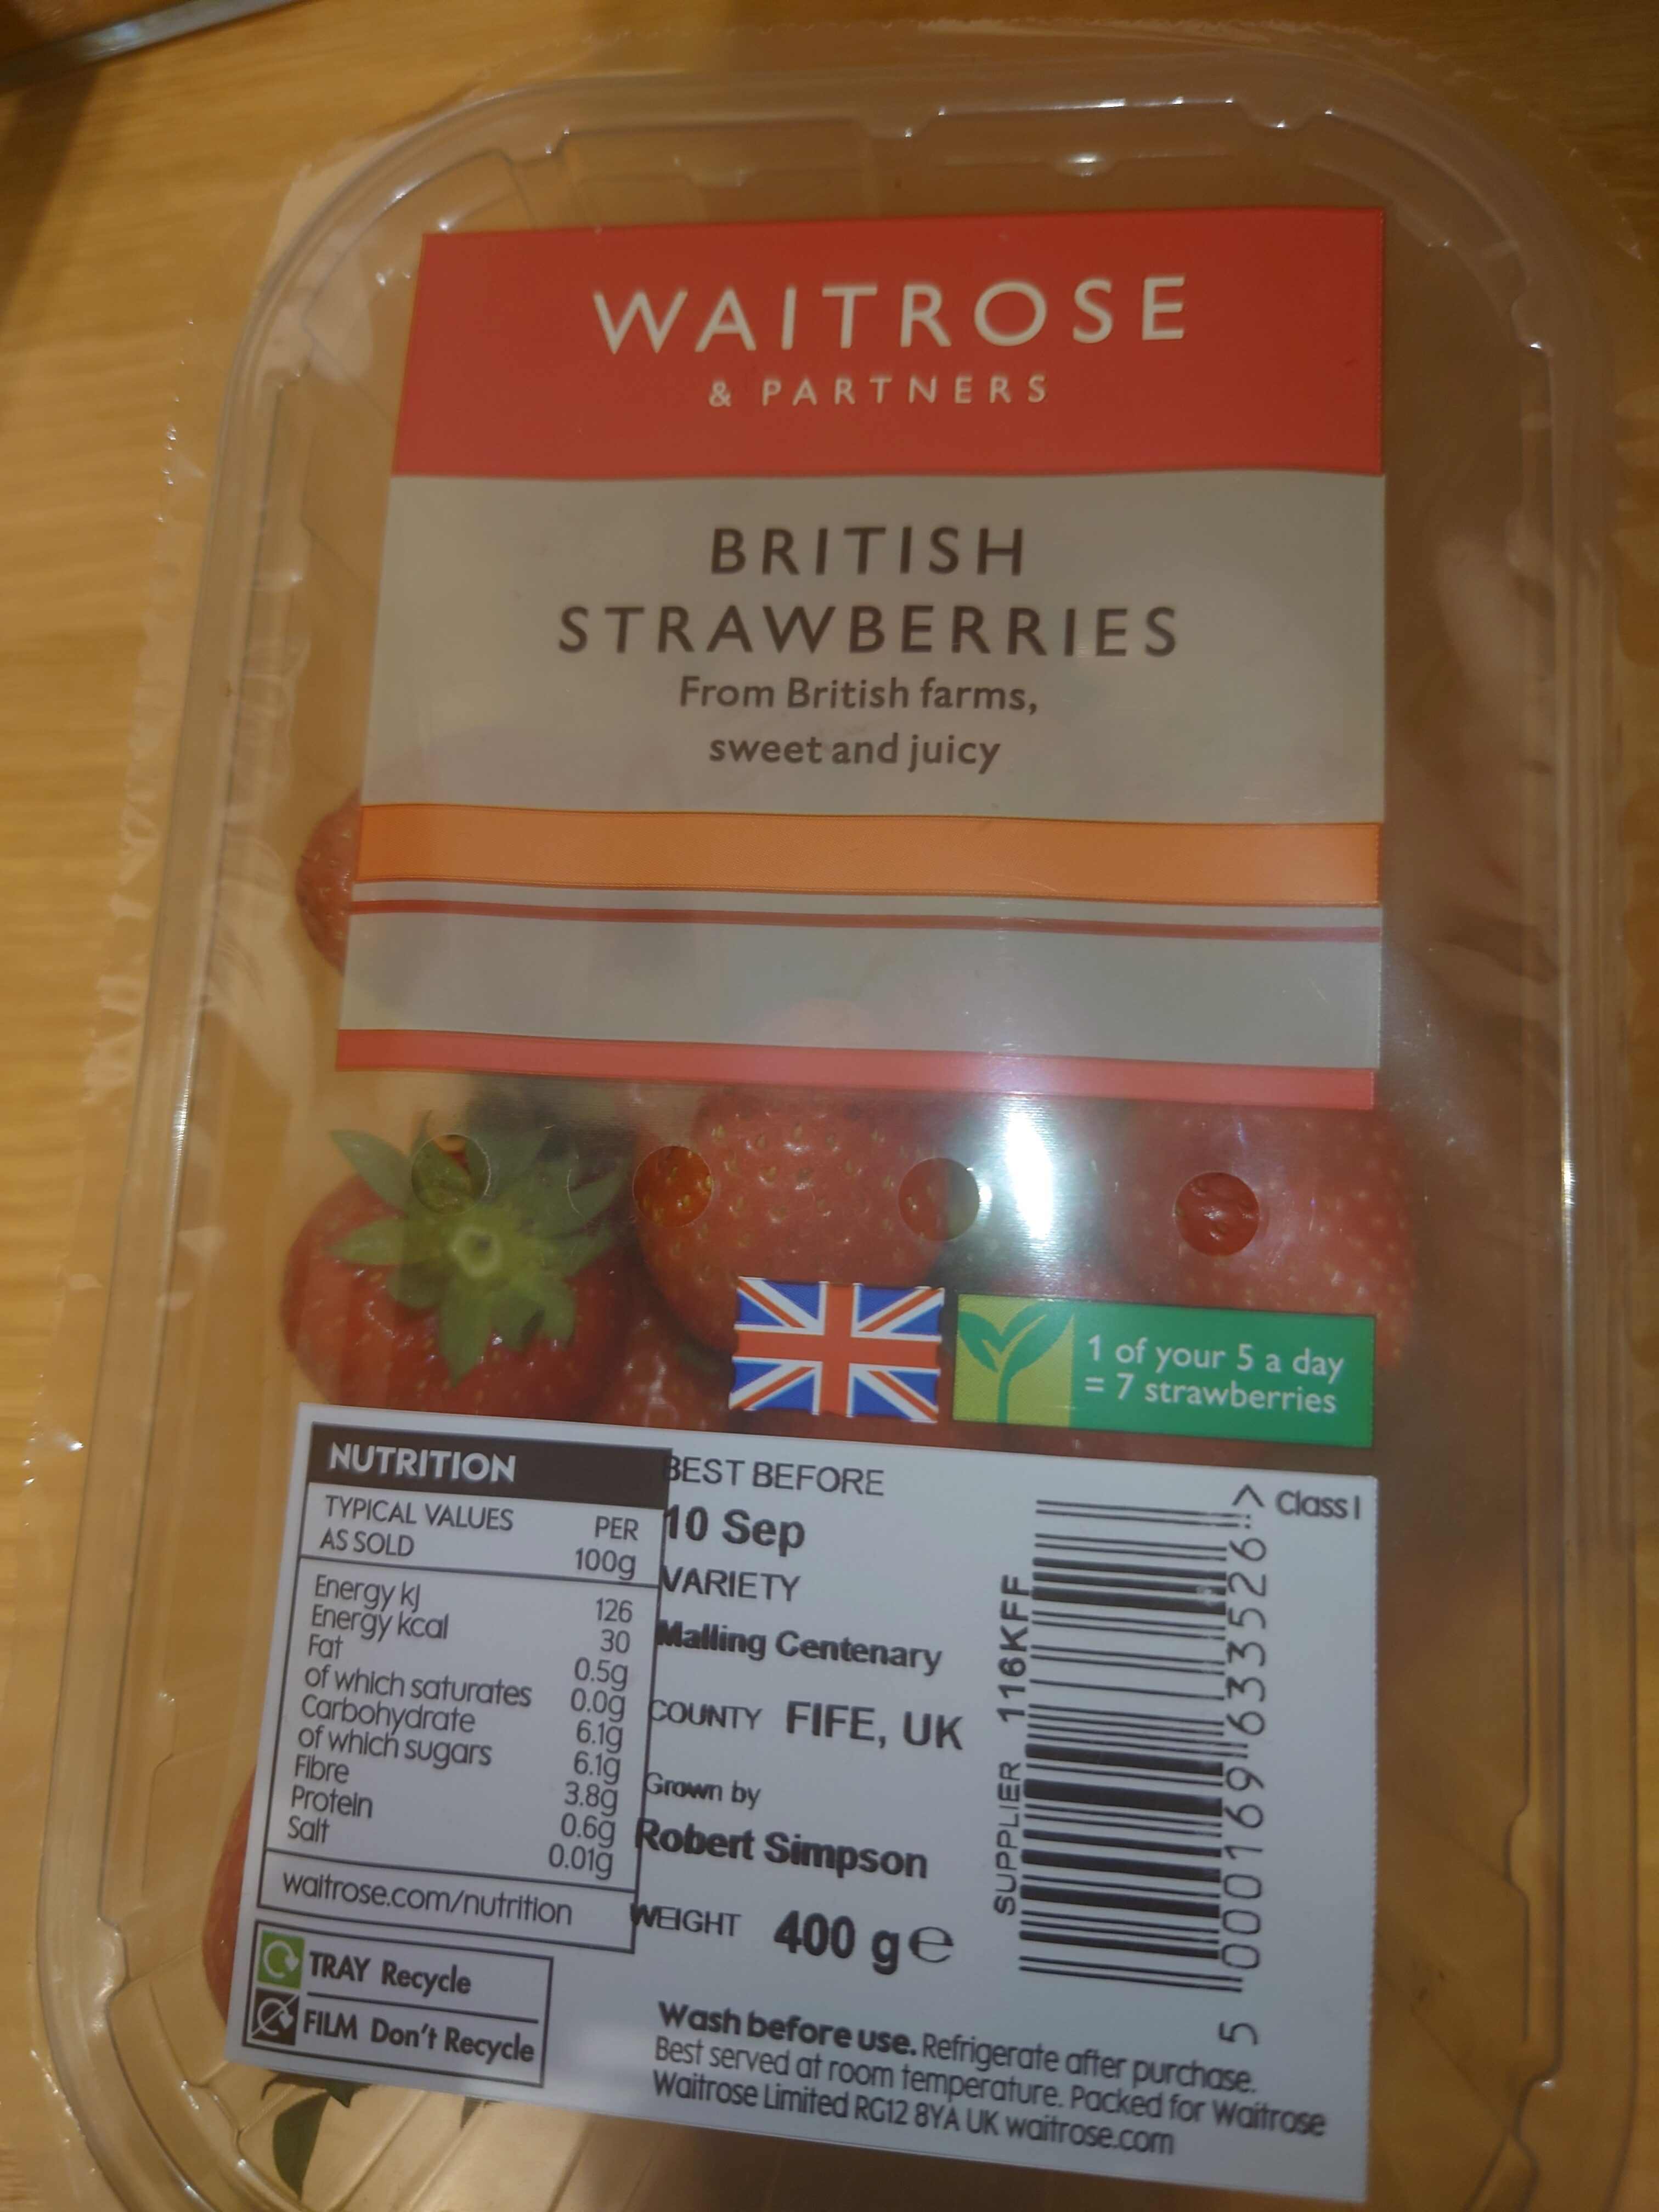 Waitrose British Strawberries - Product